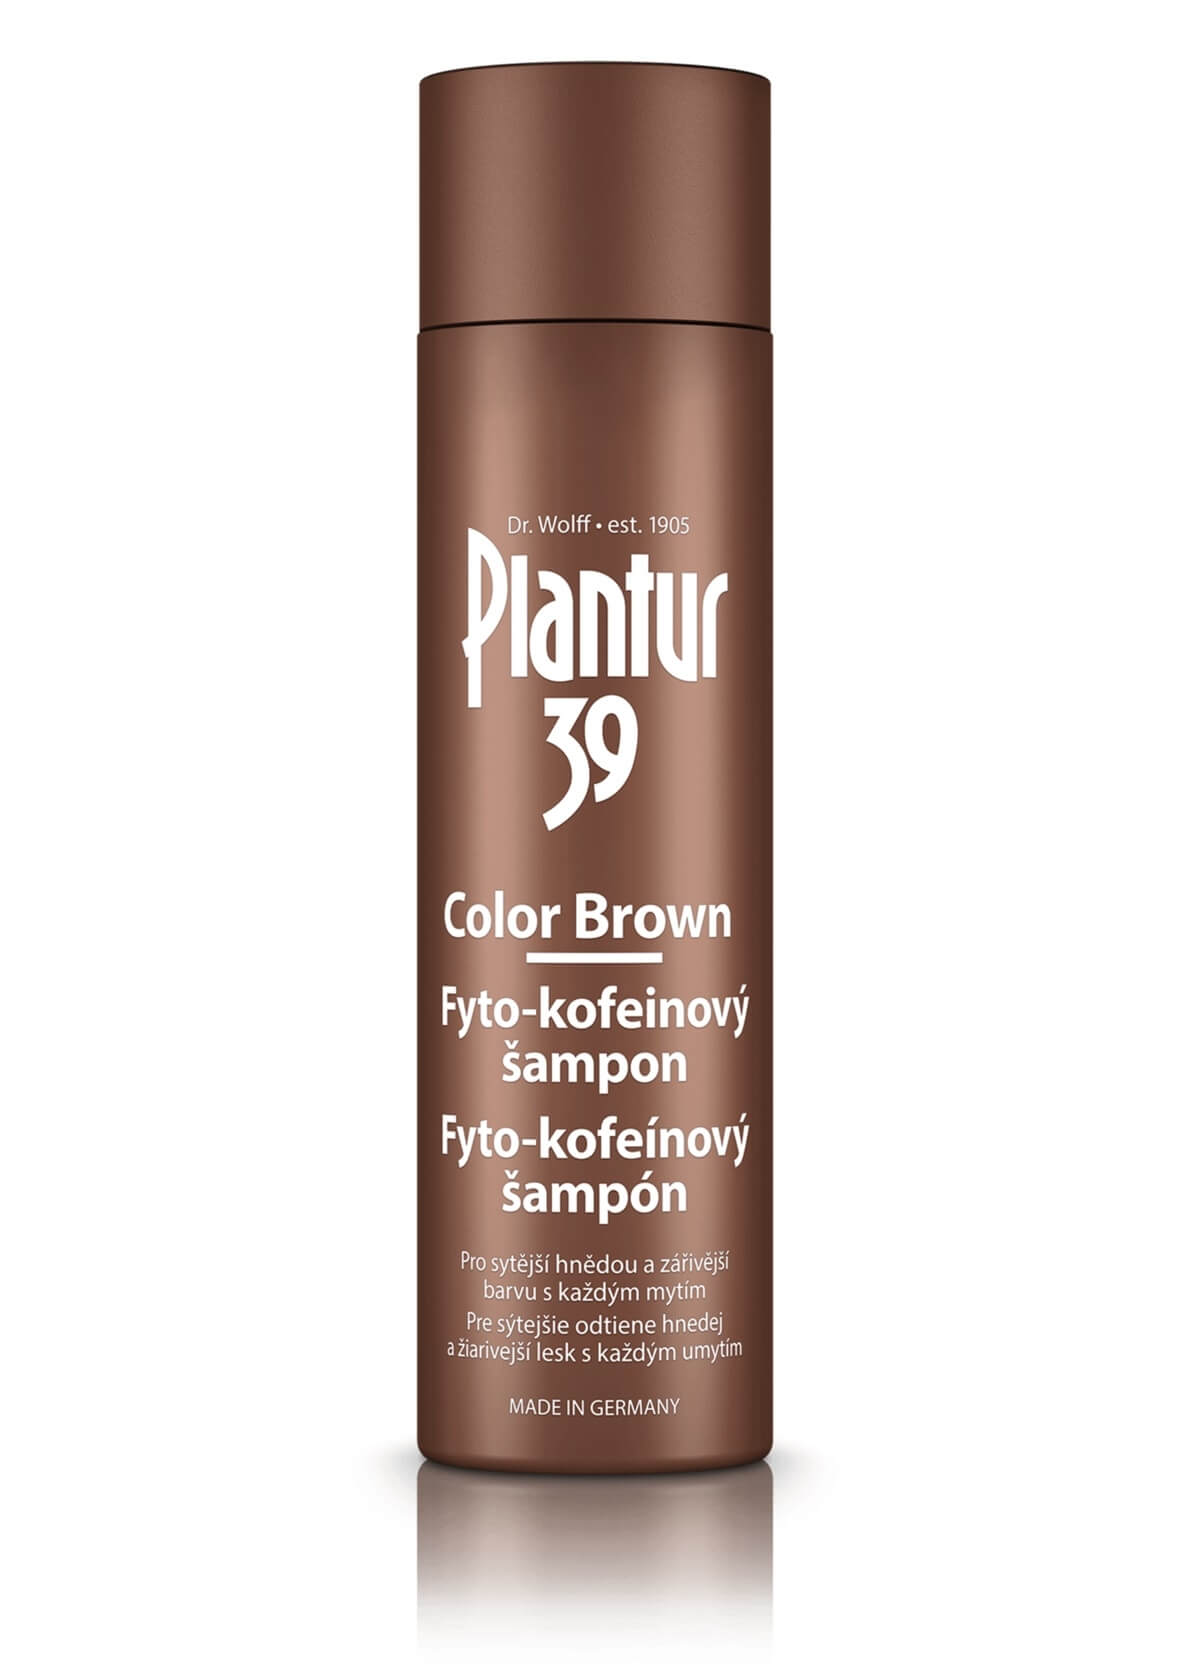 Plantur Fyto-kofeinovy šampon Color Brown pro hnědé vlasy 250 ml